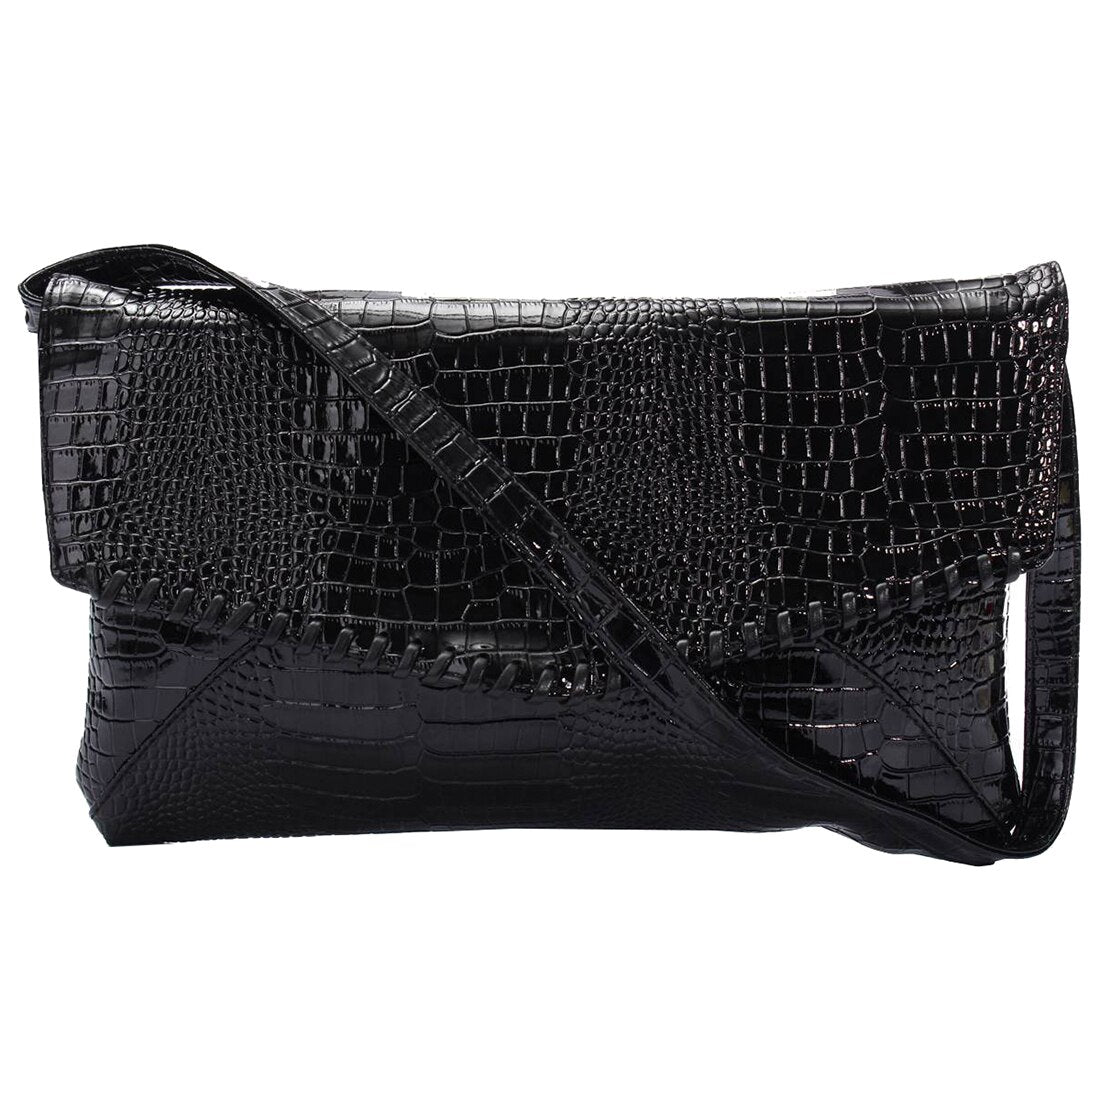 Crocodile pattern Handbag for Evening Party black - ebowsos